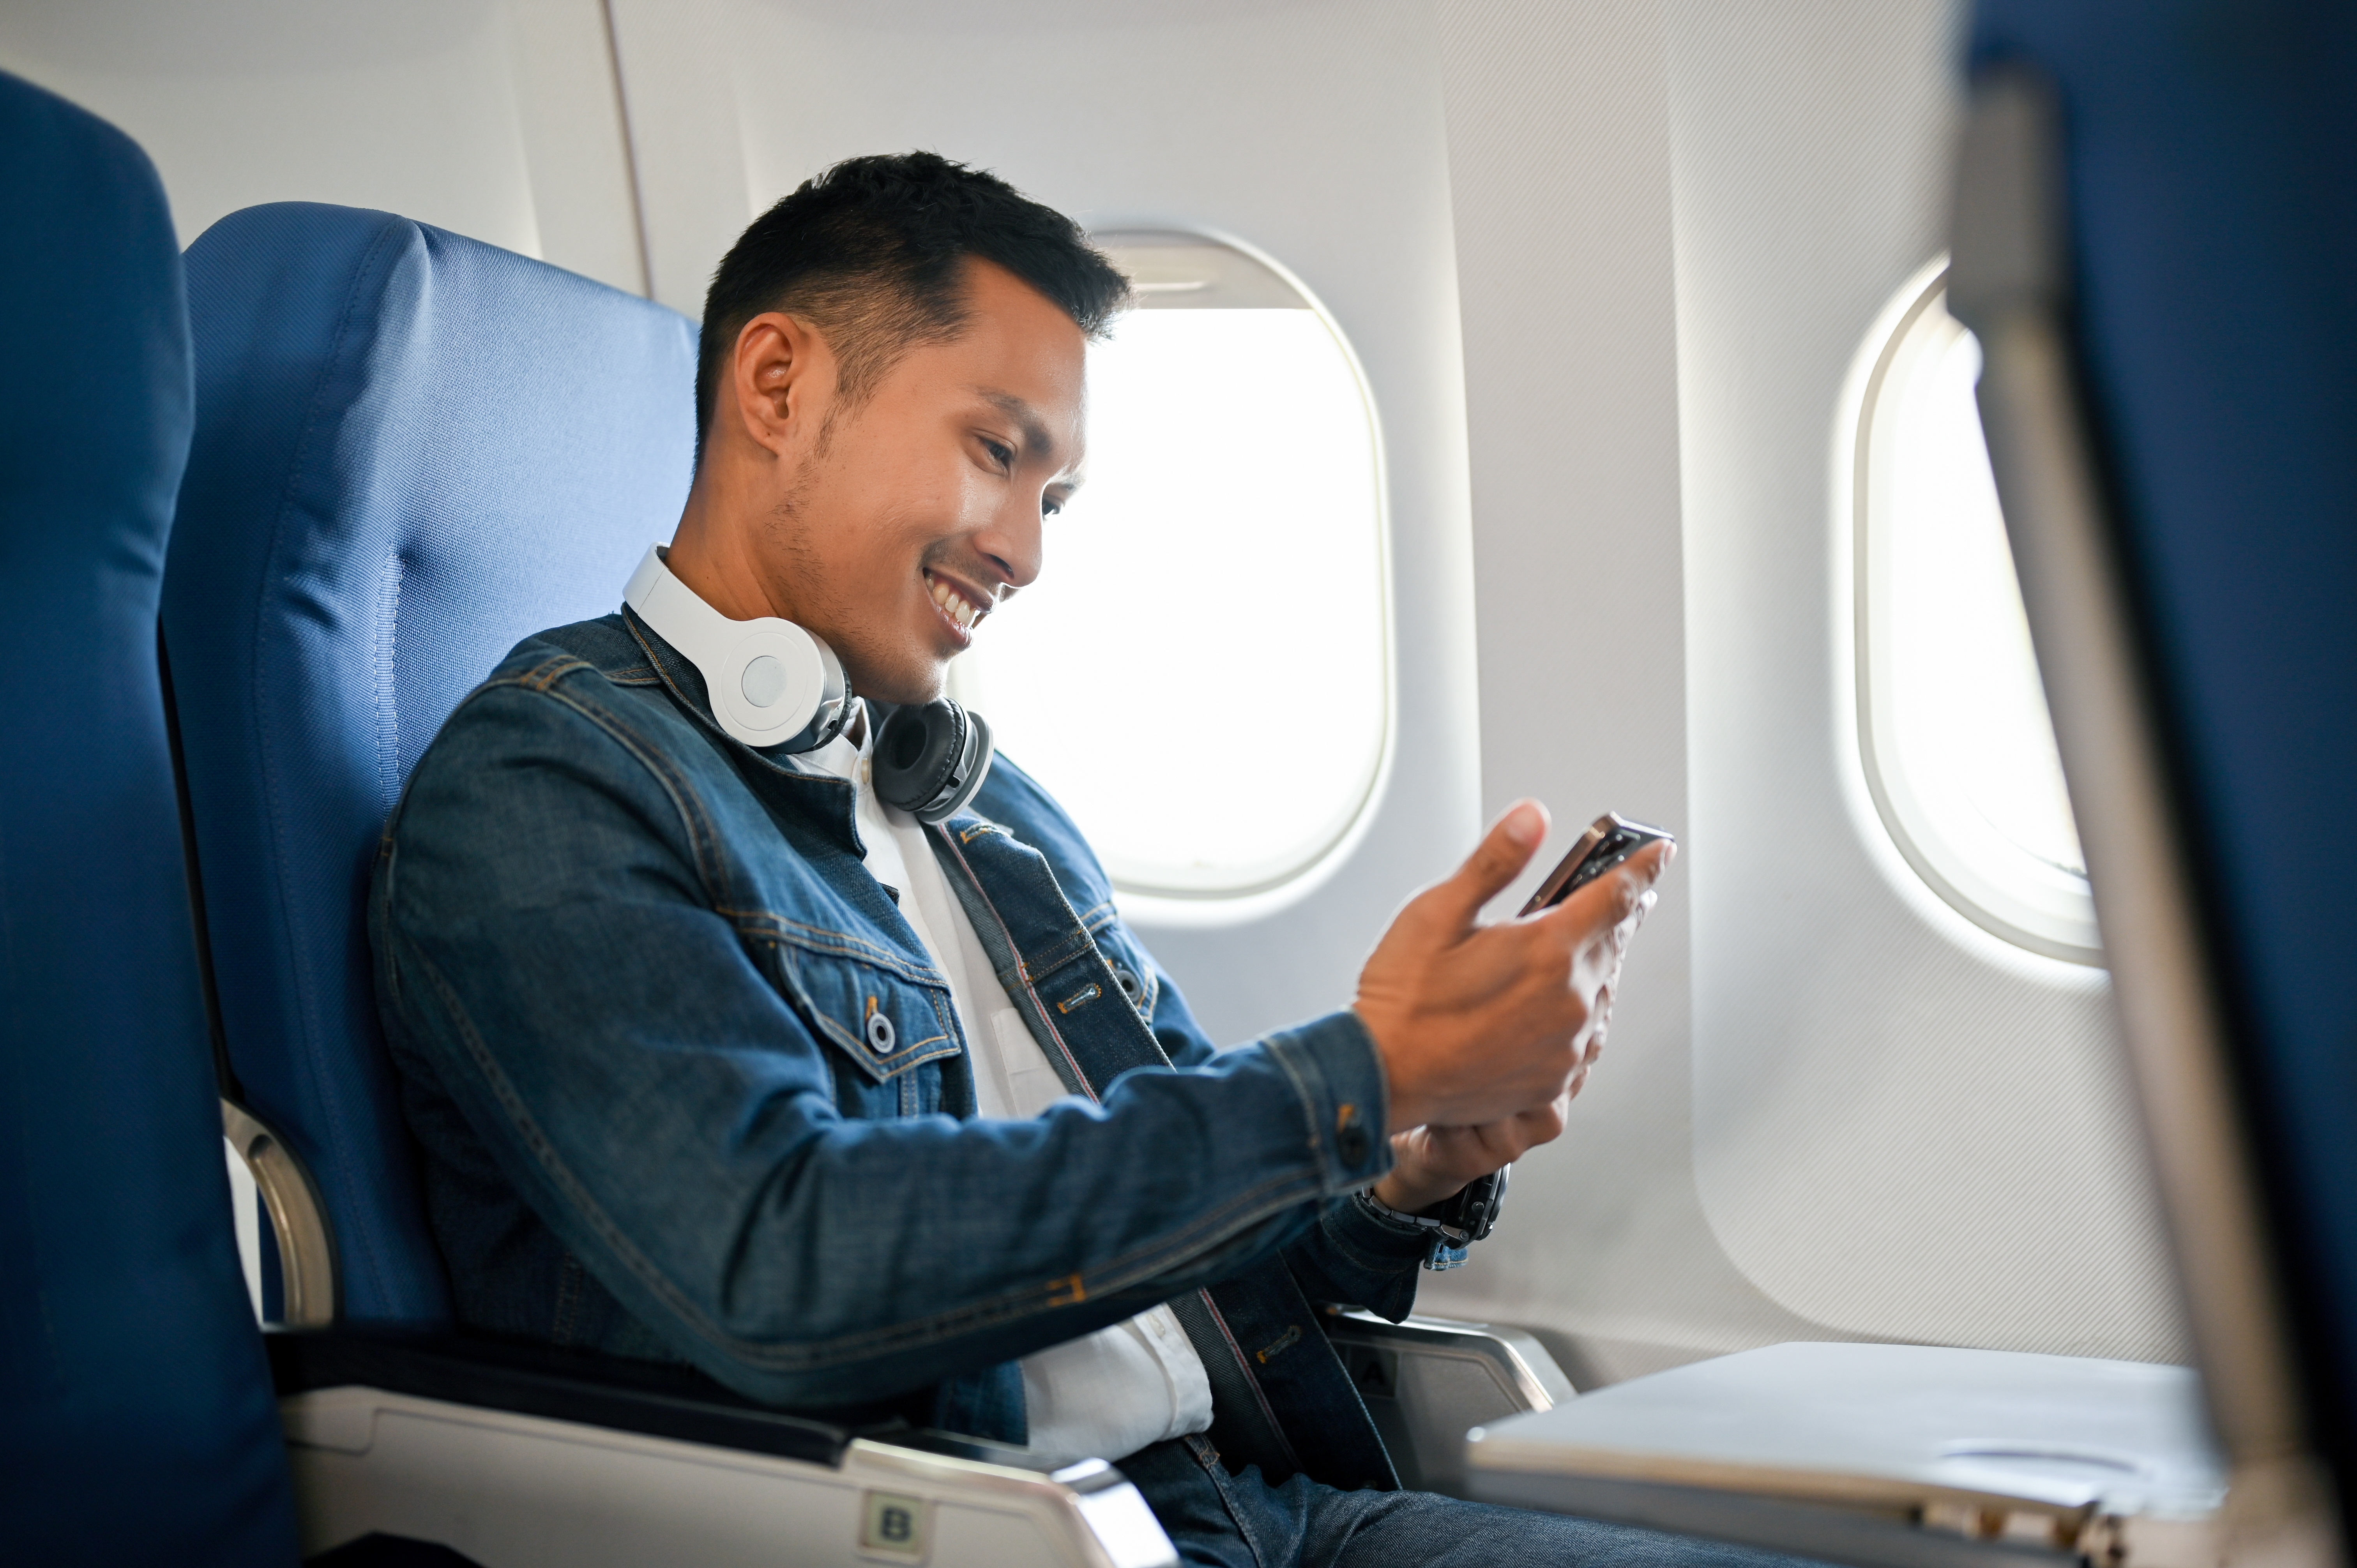 Junger Mann in einem Flugzeug | Quelle: Shutterstock